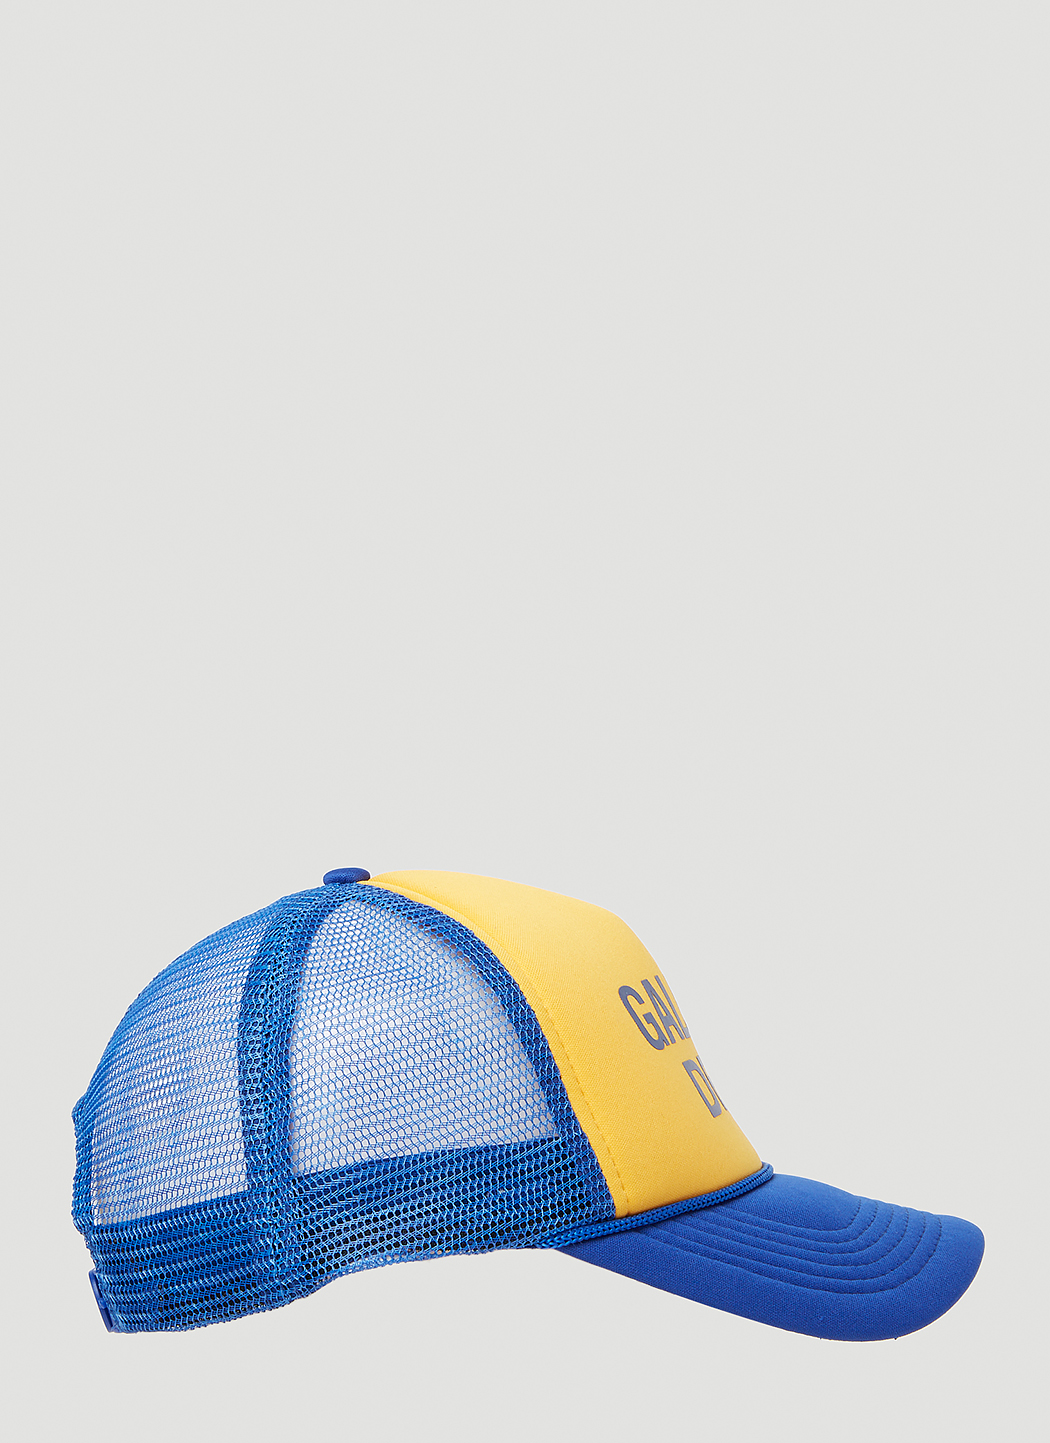 10,350円R13 logo mesh smapback cap yellow